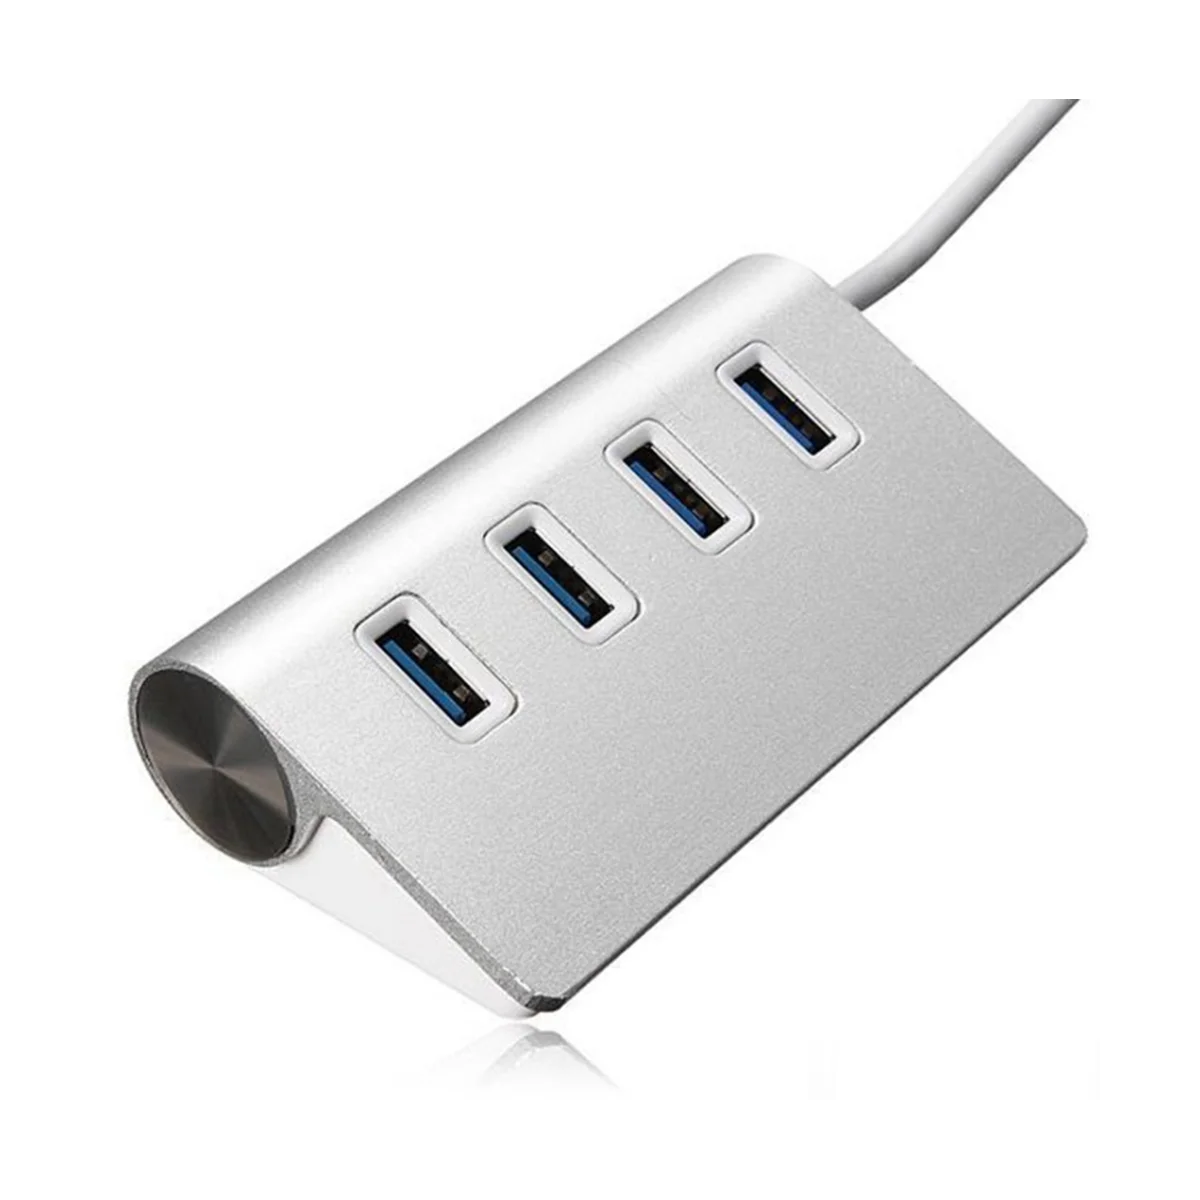 CONCENTRADOR USB 3.0, 4 portas de Alta Velocidade 5Gbps Adaptador de Energia USB 2.0 Hub USB Divisor para Laptop Adaptador de Acessórios de informática Imagem 3